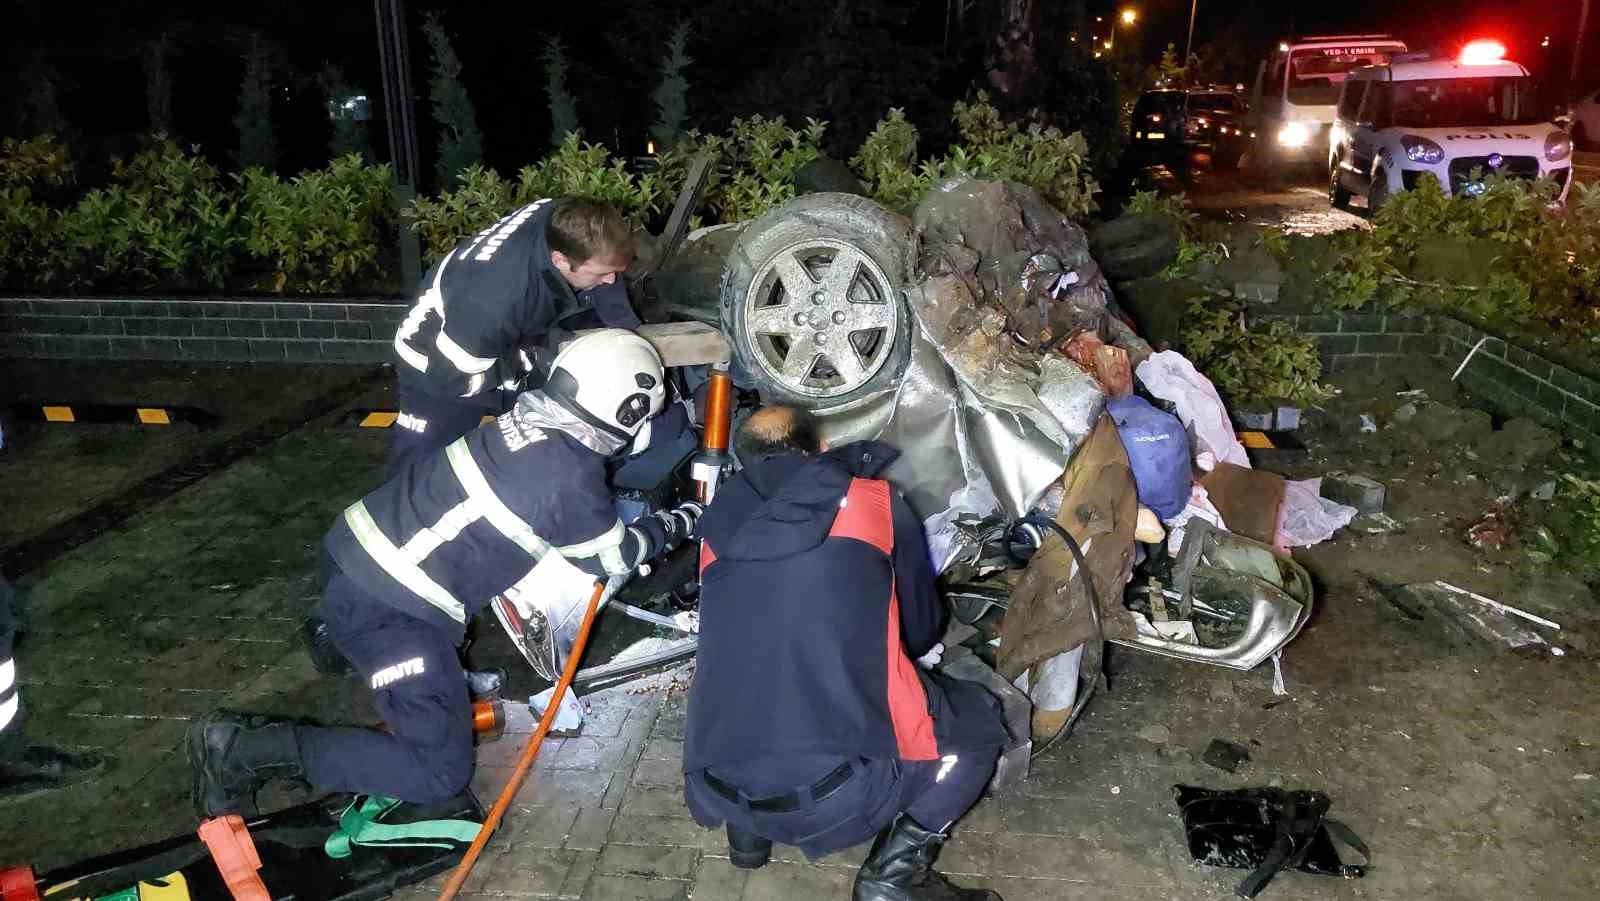 Samsun'da alkollü sürücü dehşet saçtı: 4 ölü, 2 yaralı
